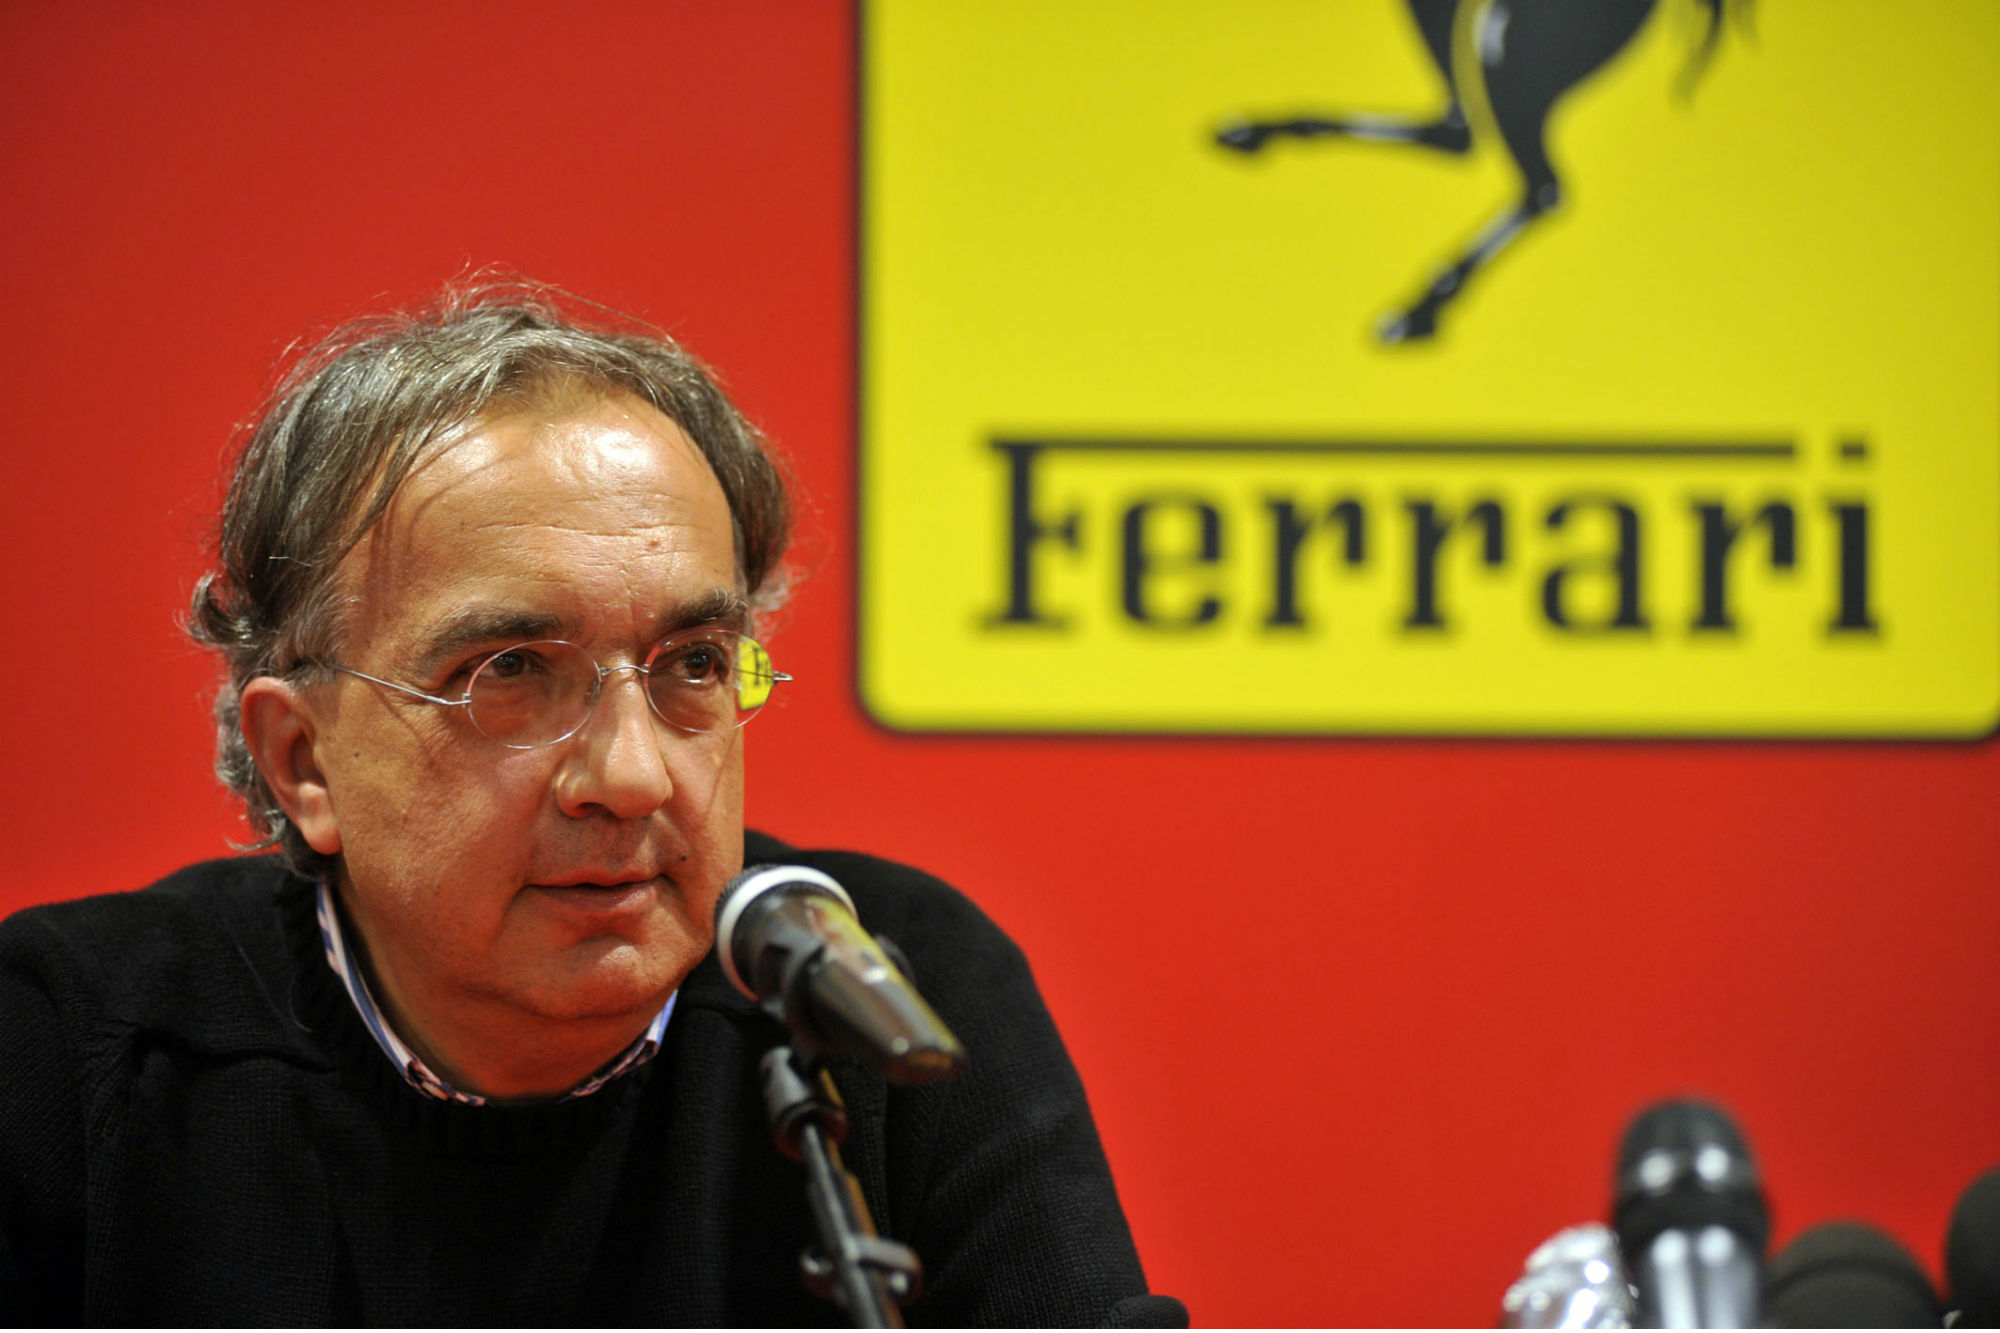 Marchionne: Ferrari Crossover?